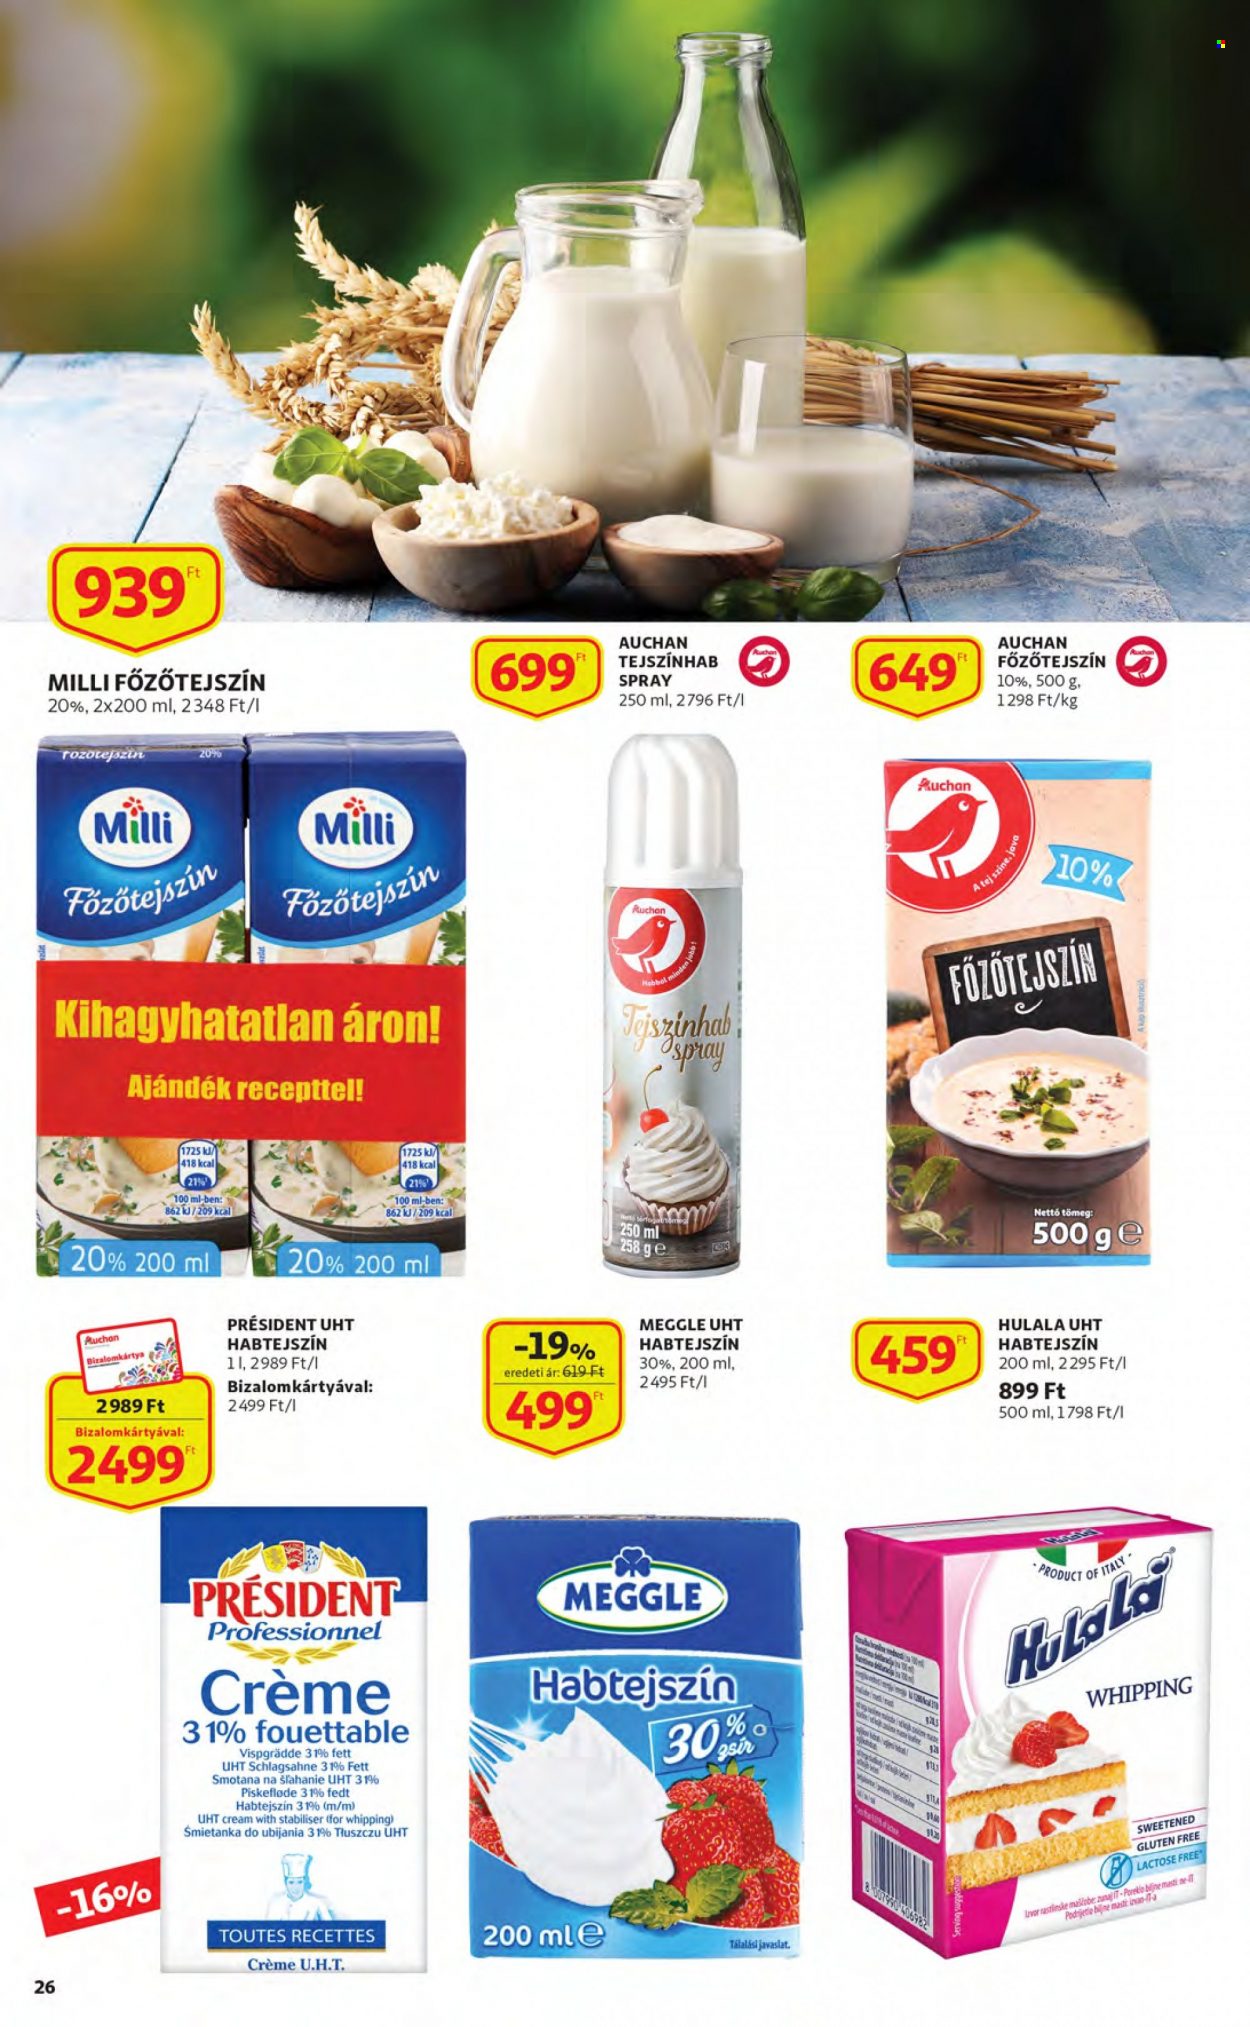 thumbnail - Auchan akciós újsága  - 2022.11.24 - 2022.11.30 - Akciós termékek - Meggle, Président, Milli, tejszínhab, fözőtejszín, tejszínhabspray, habtejszín.  26. Oldal